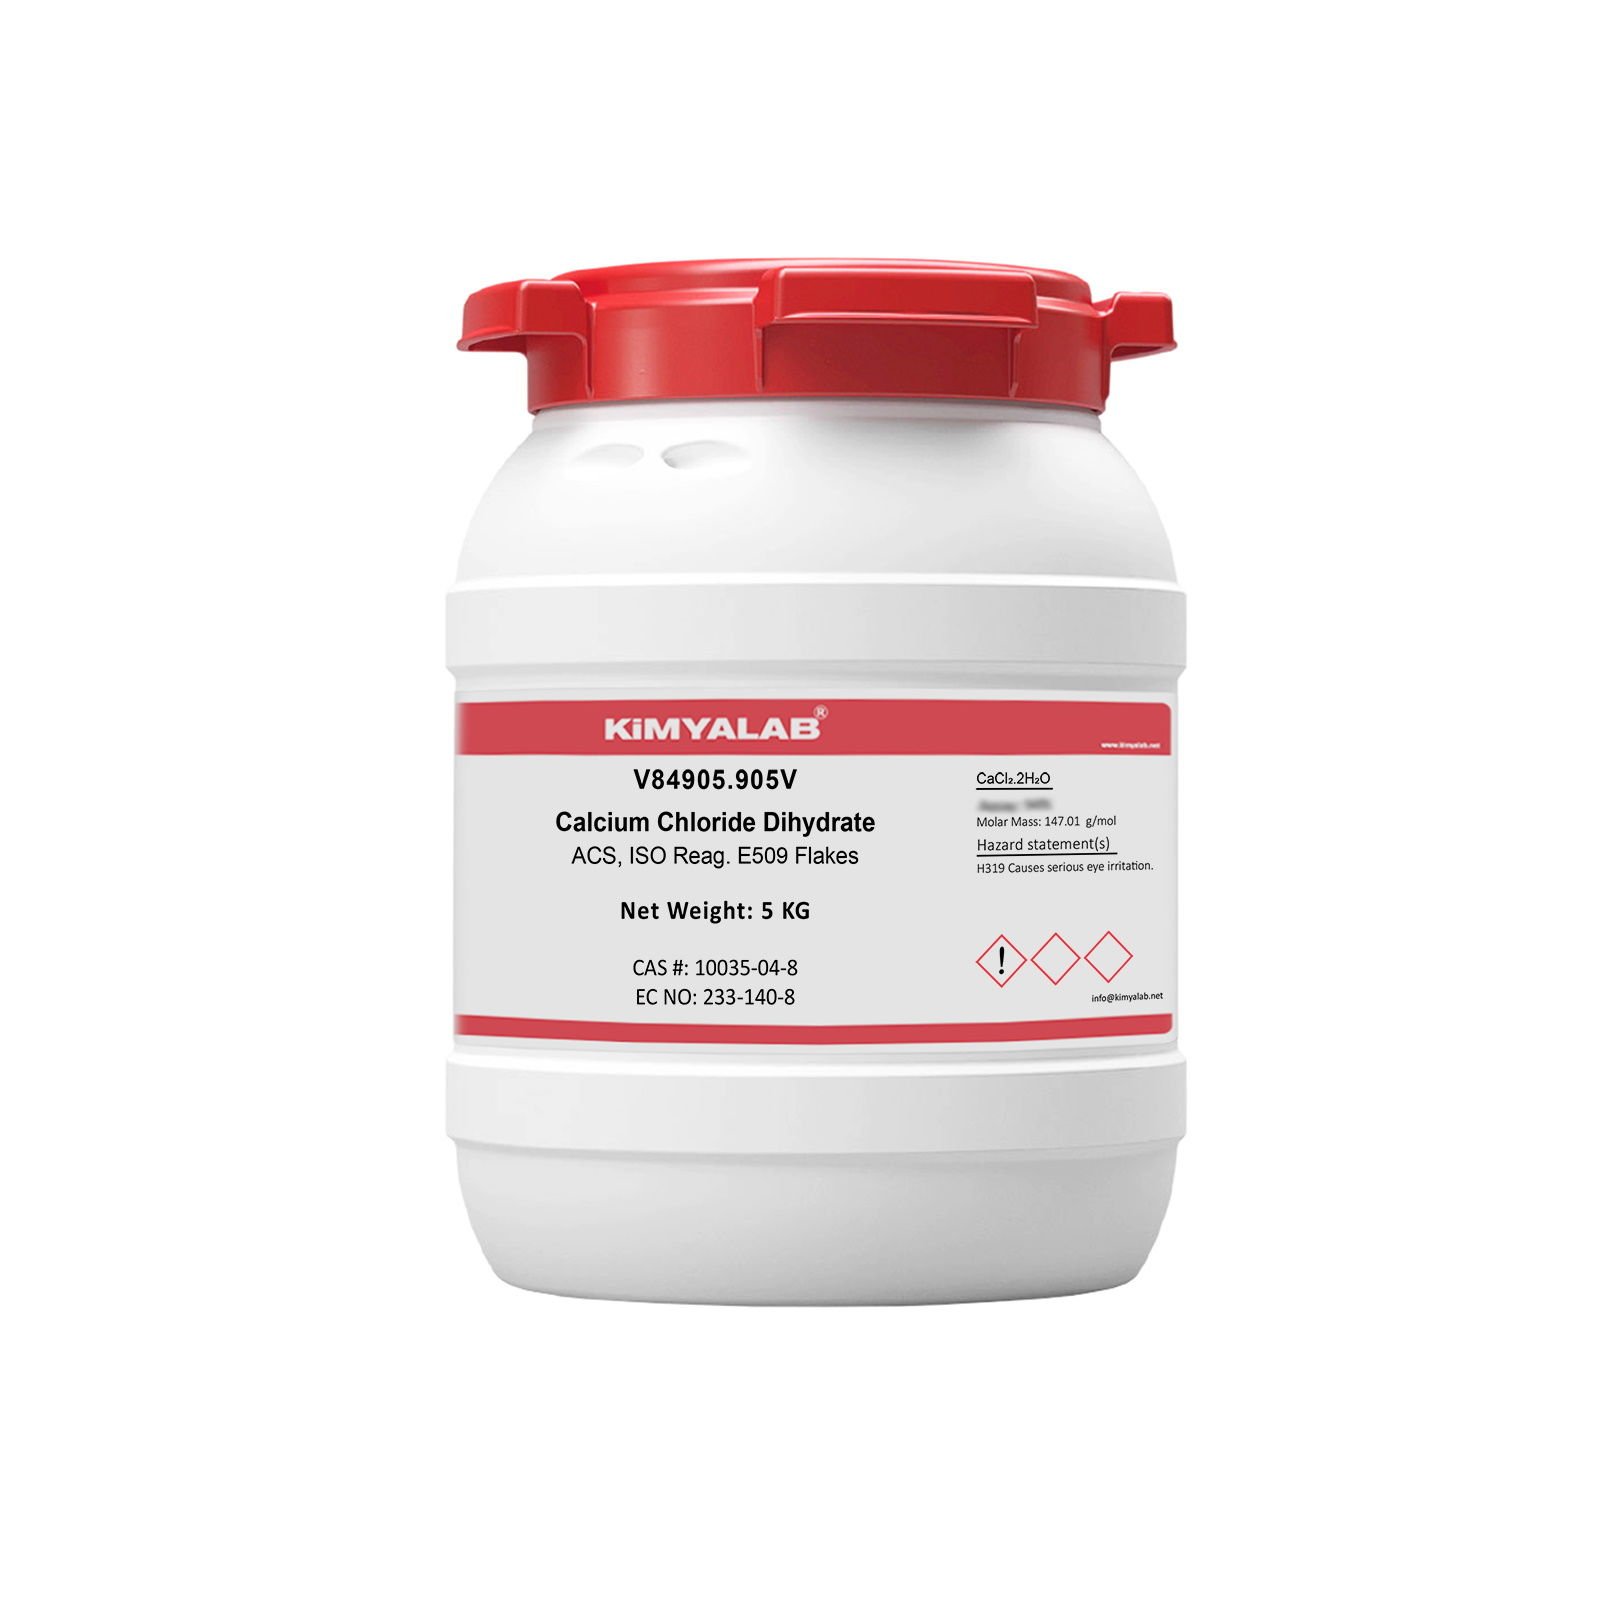 Kimyalab Kalsiyum Klorür Payet - Calcium Chloride Dihydrate - 5 Kg-HDPE Varil